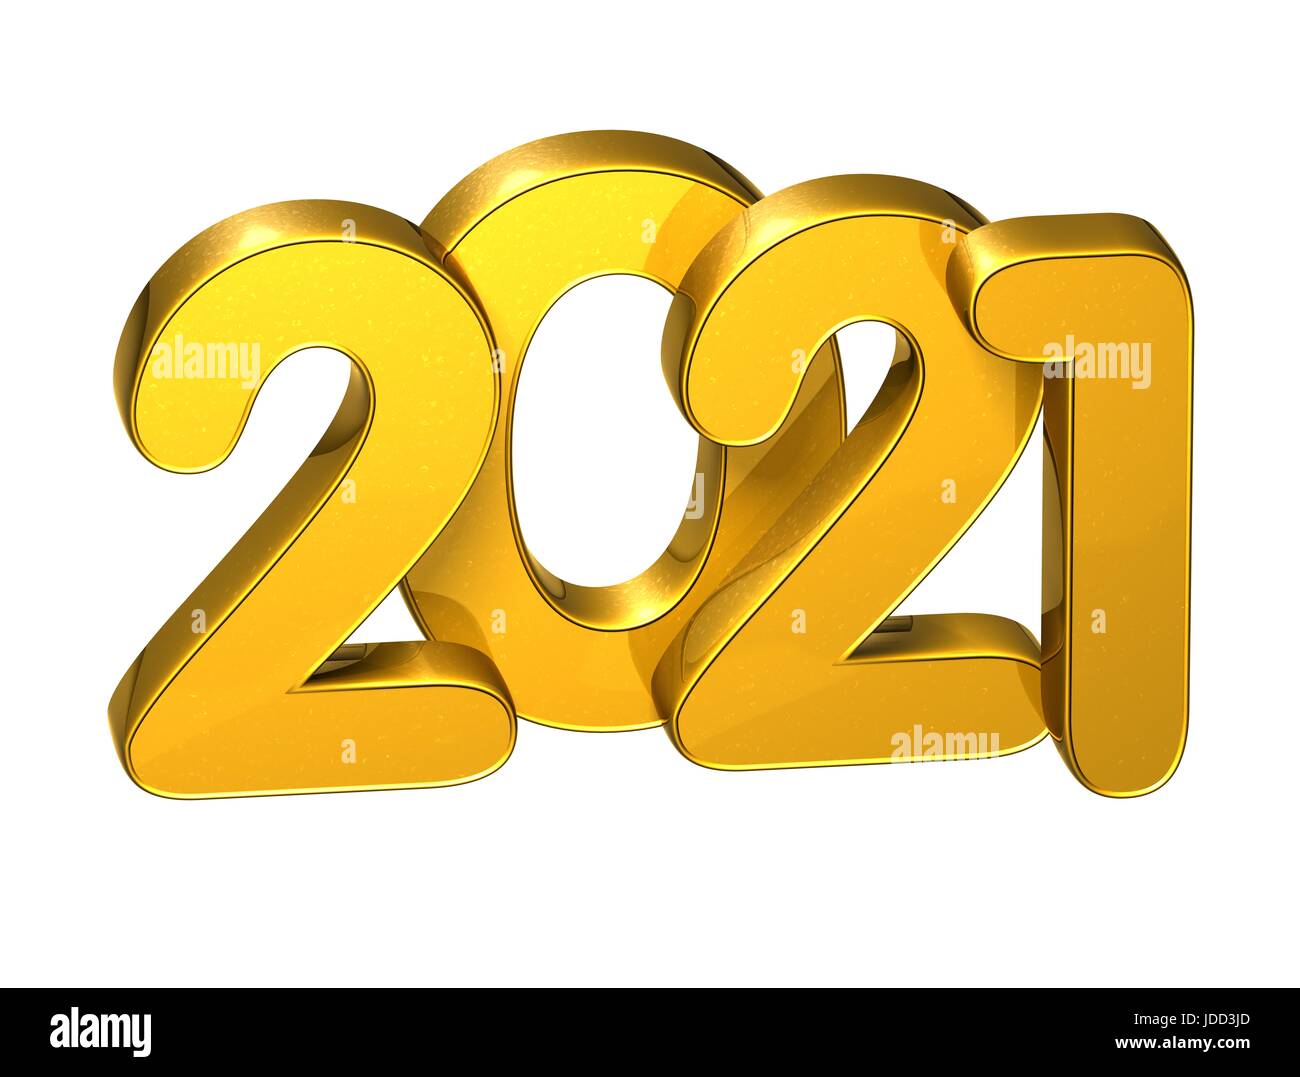 Calendar 2021 Stock Photos & Calendar 2021 Stock Images - Alamy1300 x 1077